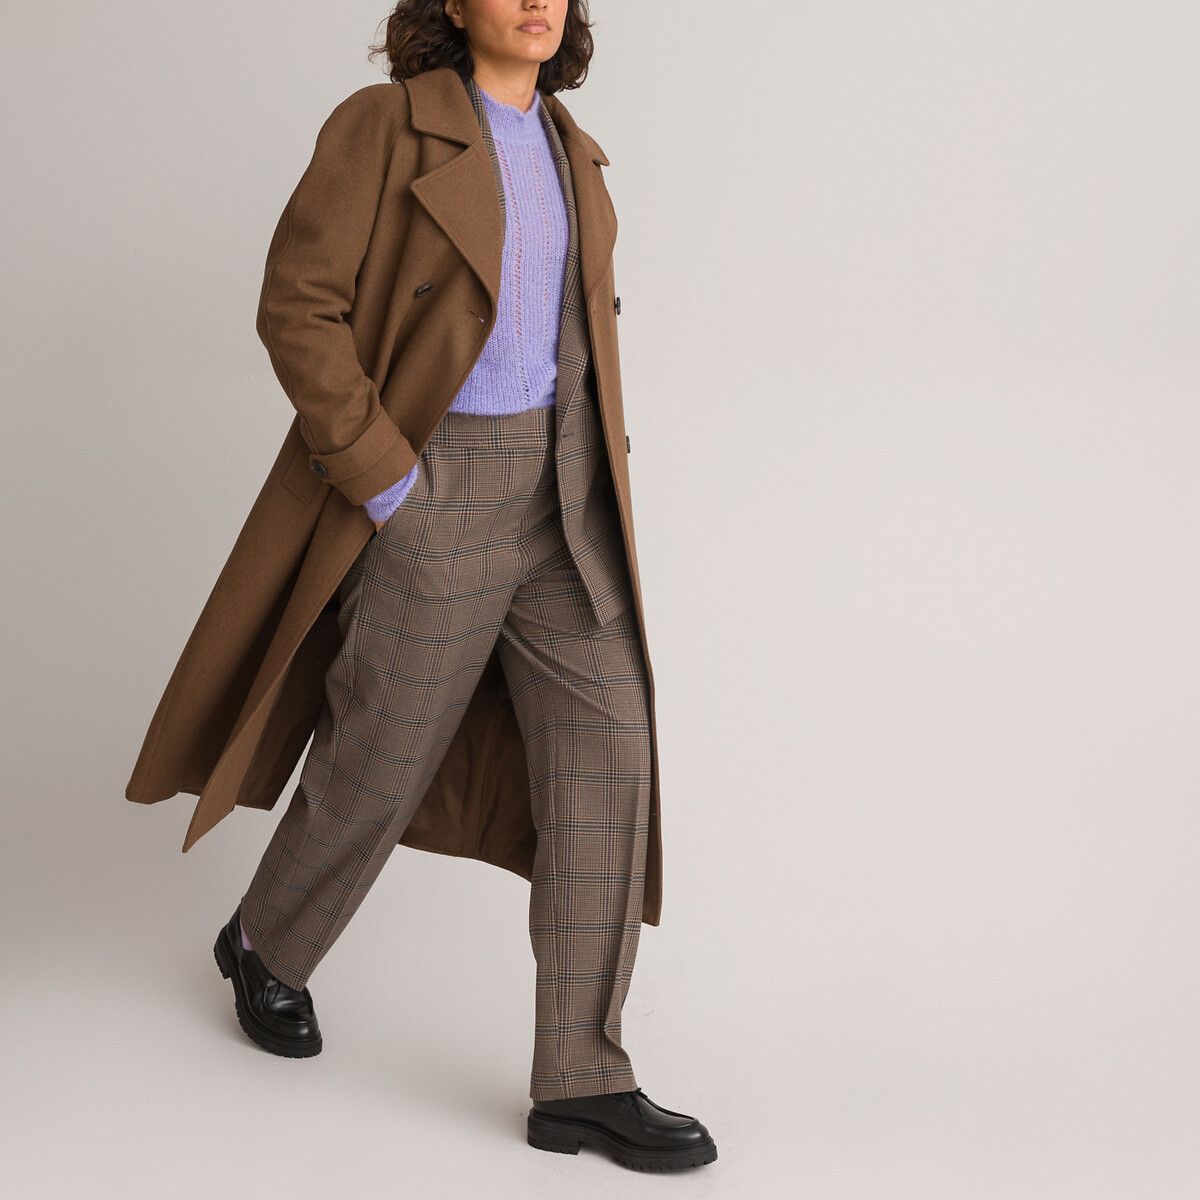 Manteau boutonné, en drap de laine | La Redoute (FR)